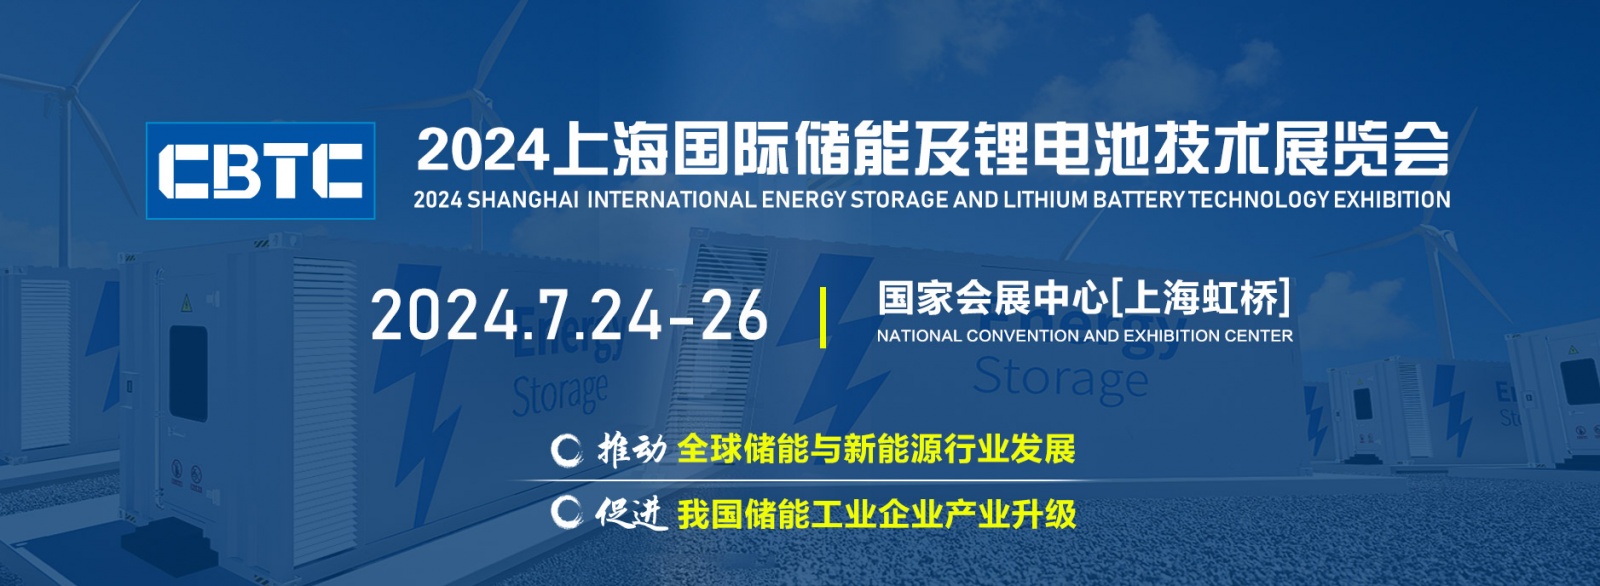 2024CBTC上海国际储能技术展览会